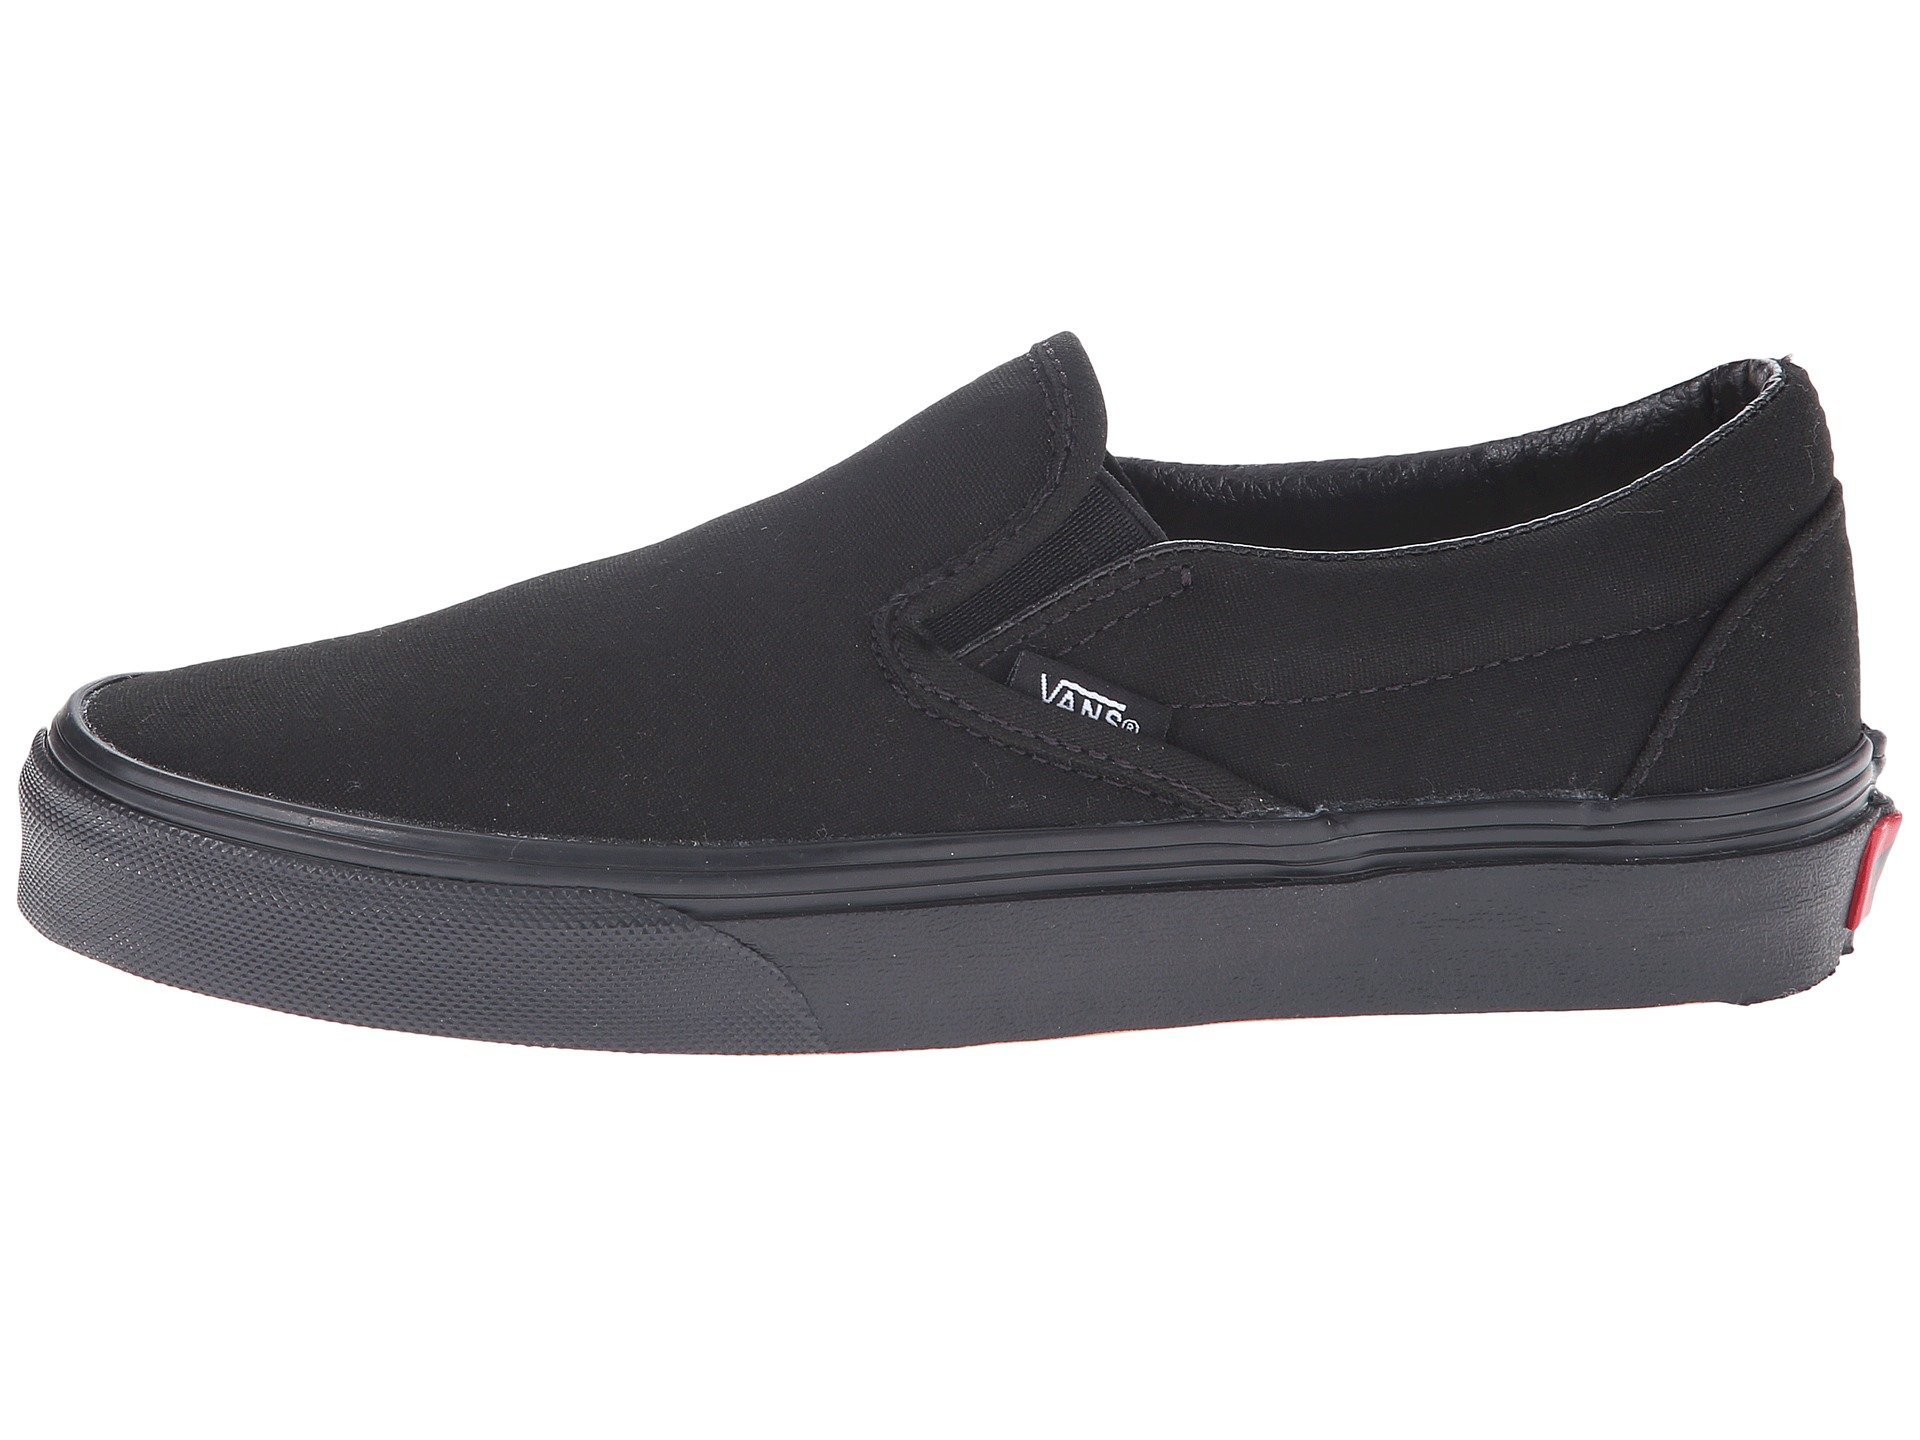 Vans Unisex Checkerboard Slip-On Black/Off White Check VN000EYEBWW Skate Shoes